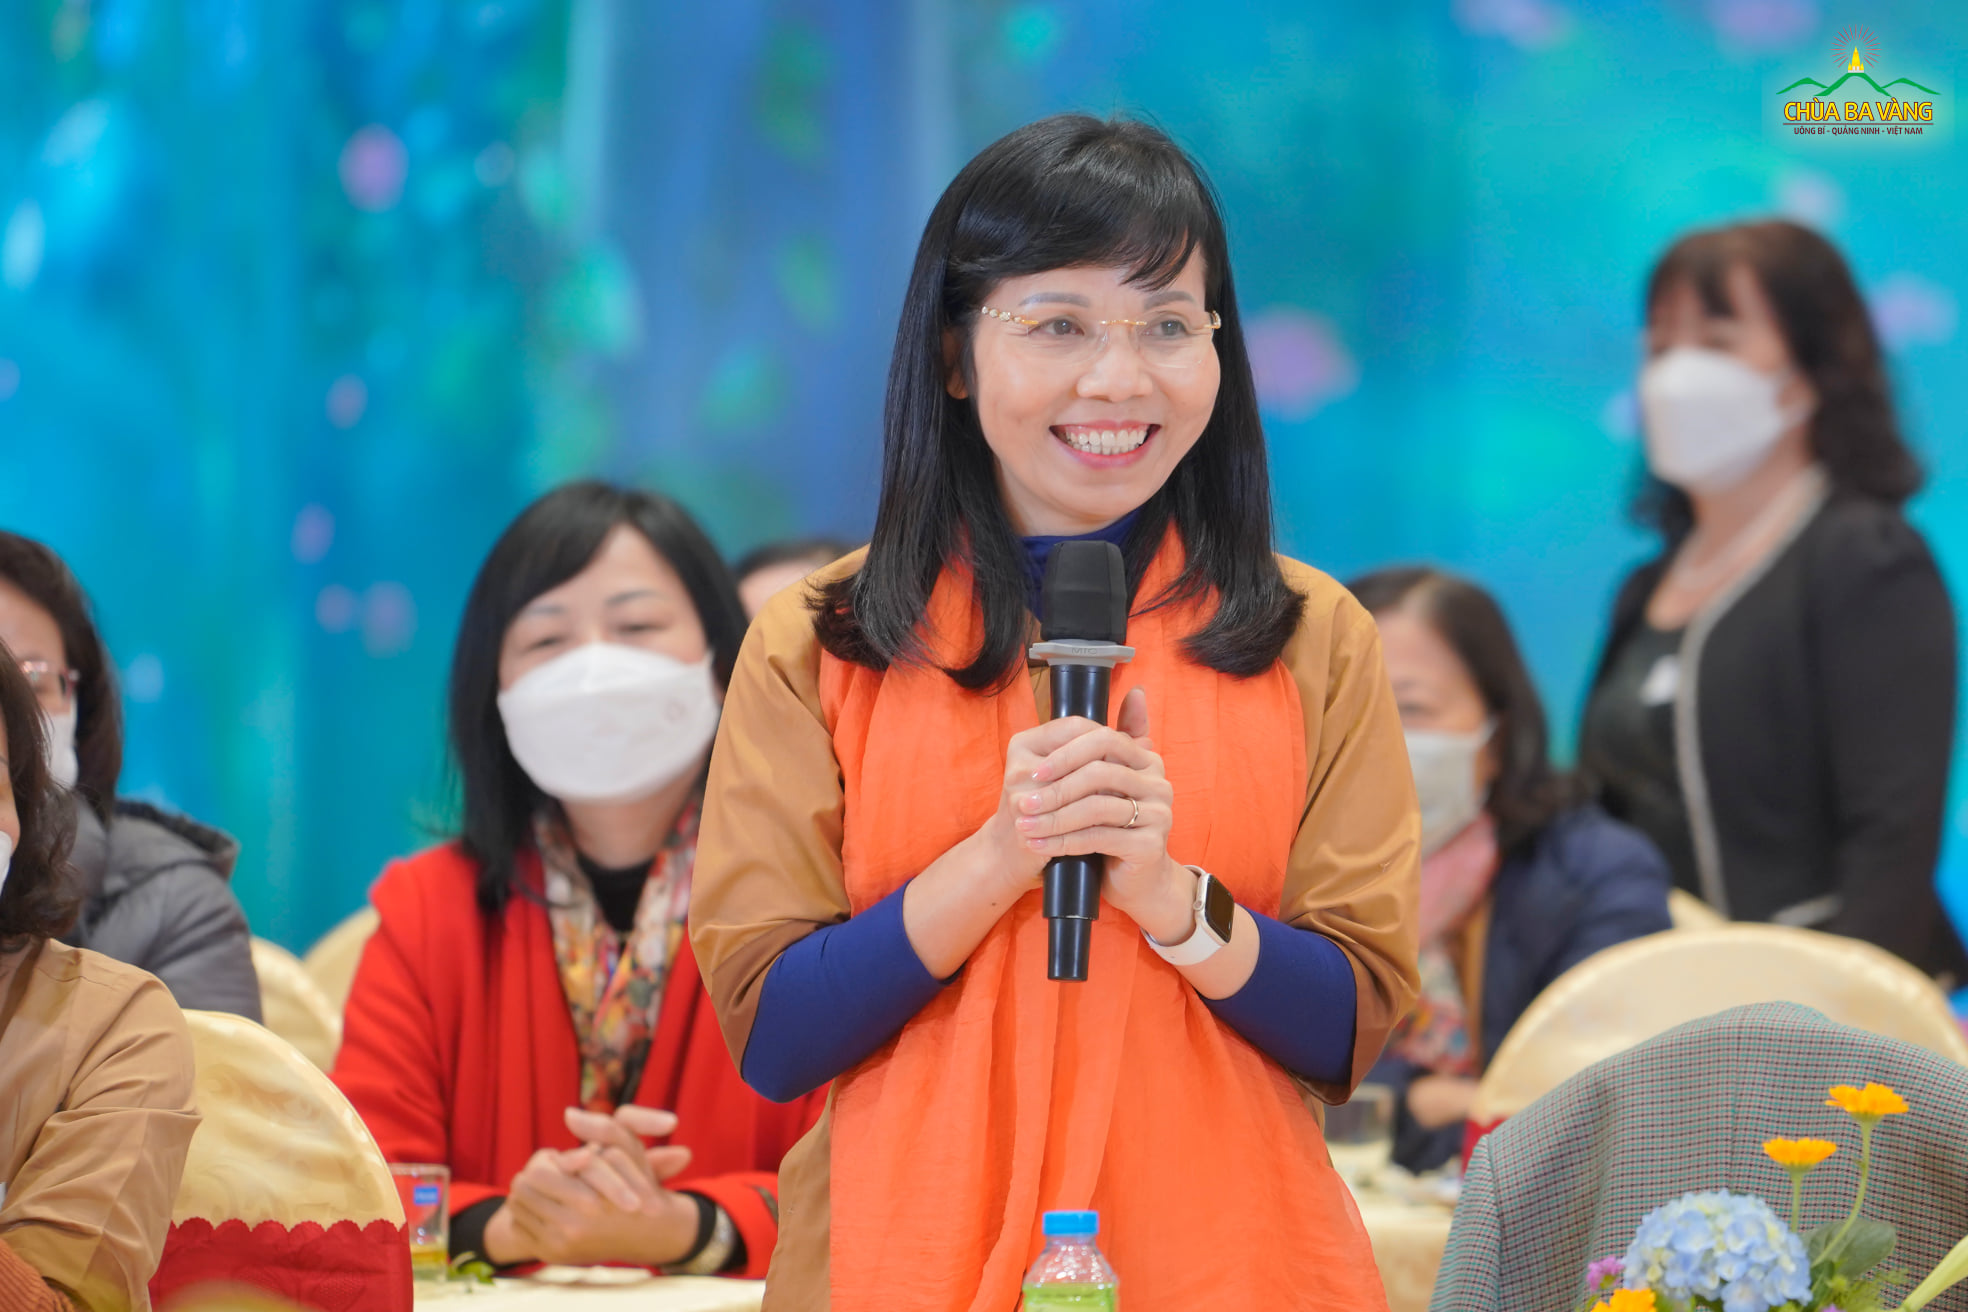 Phó Hiệu trưởng trường Đại học Kinh tế Quốc dân, Trưởng ban kết nối chương trình - bà Trần Vân Hoa chia sẻ trong buổi tọa đàm 